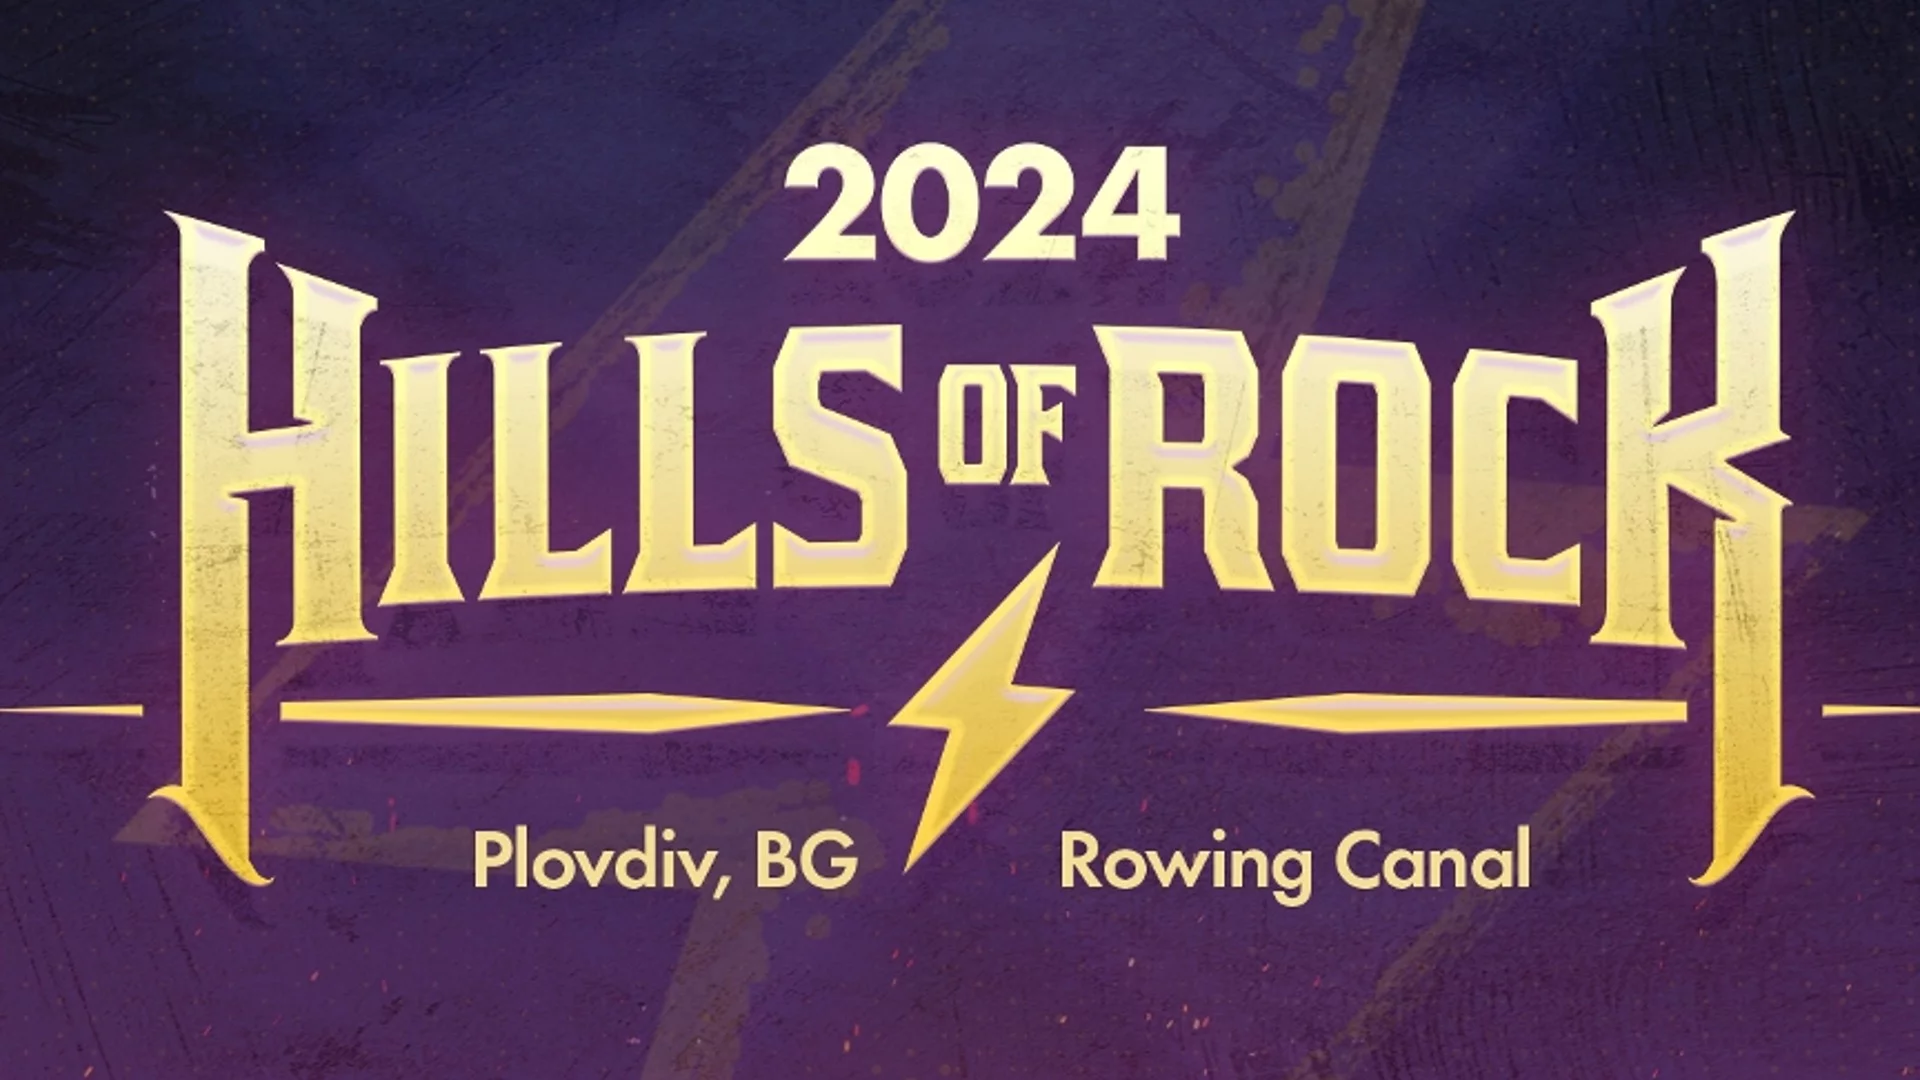 Hills of Rock 2024: Любимата метъл традиция на България (ВИДЕО)